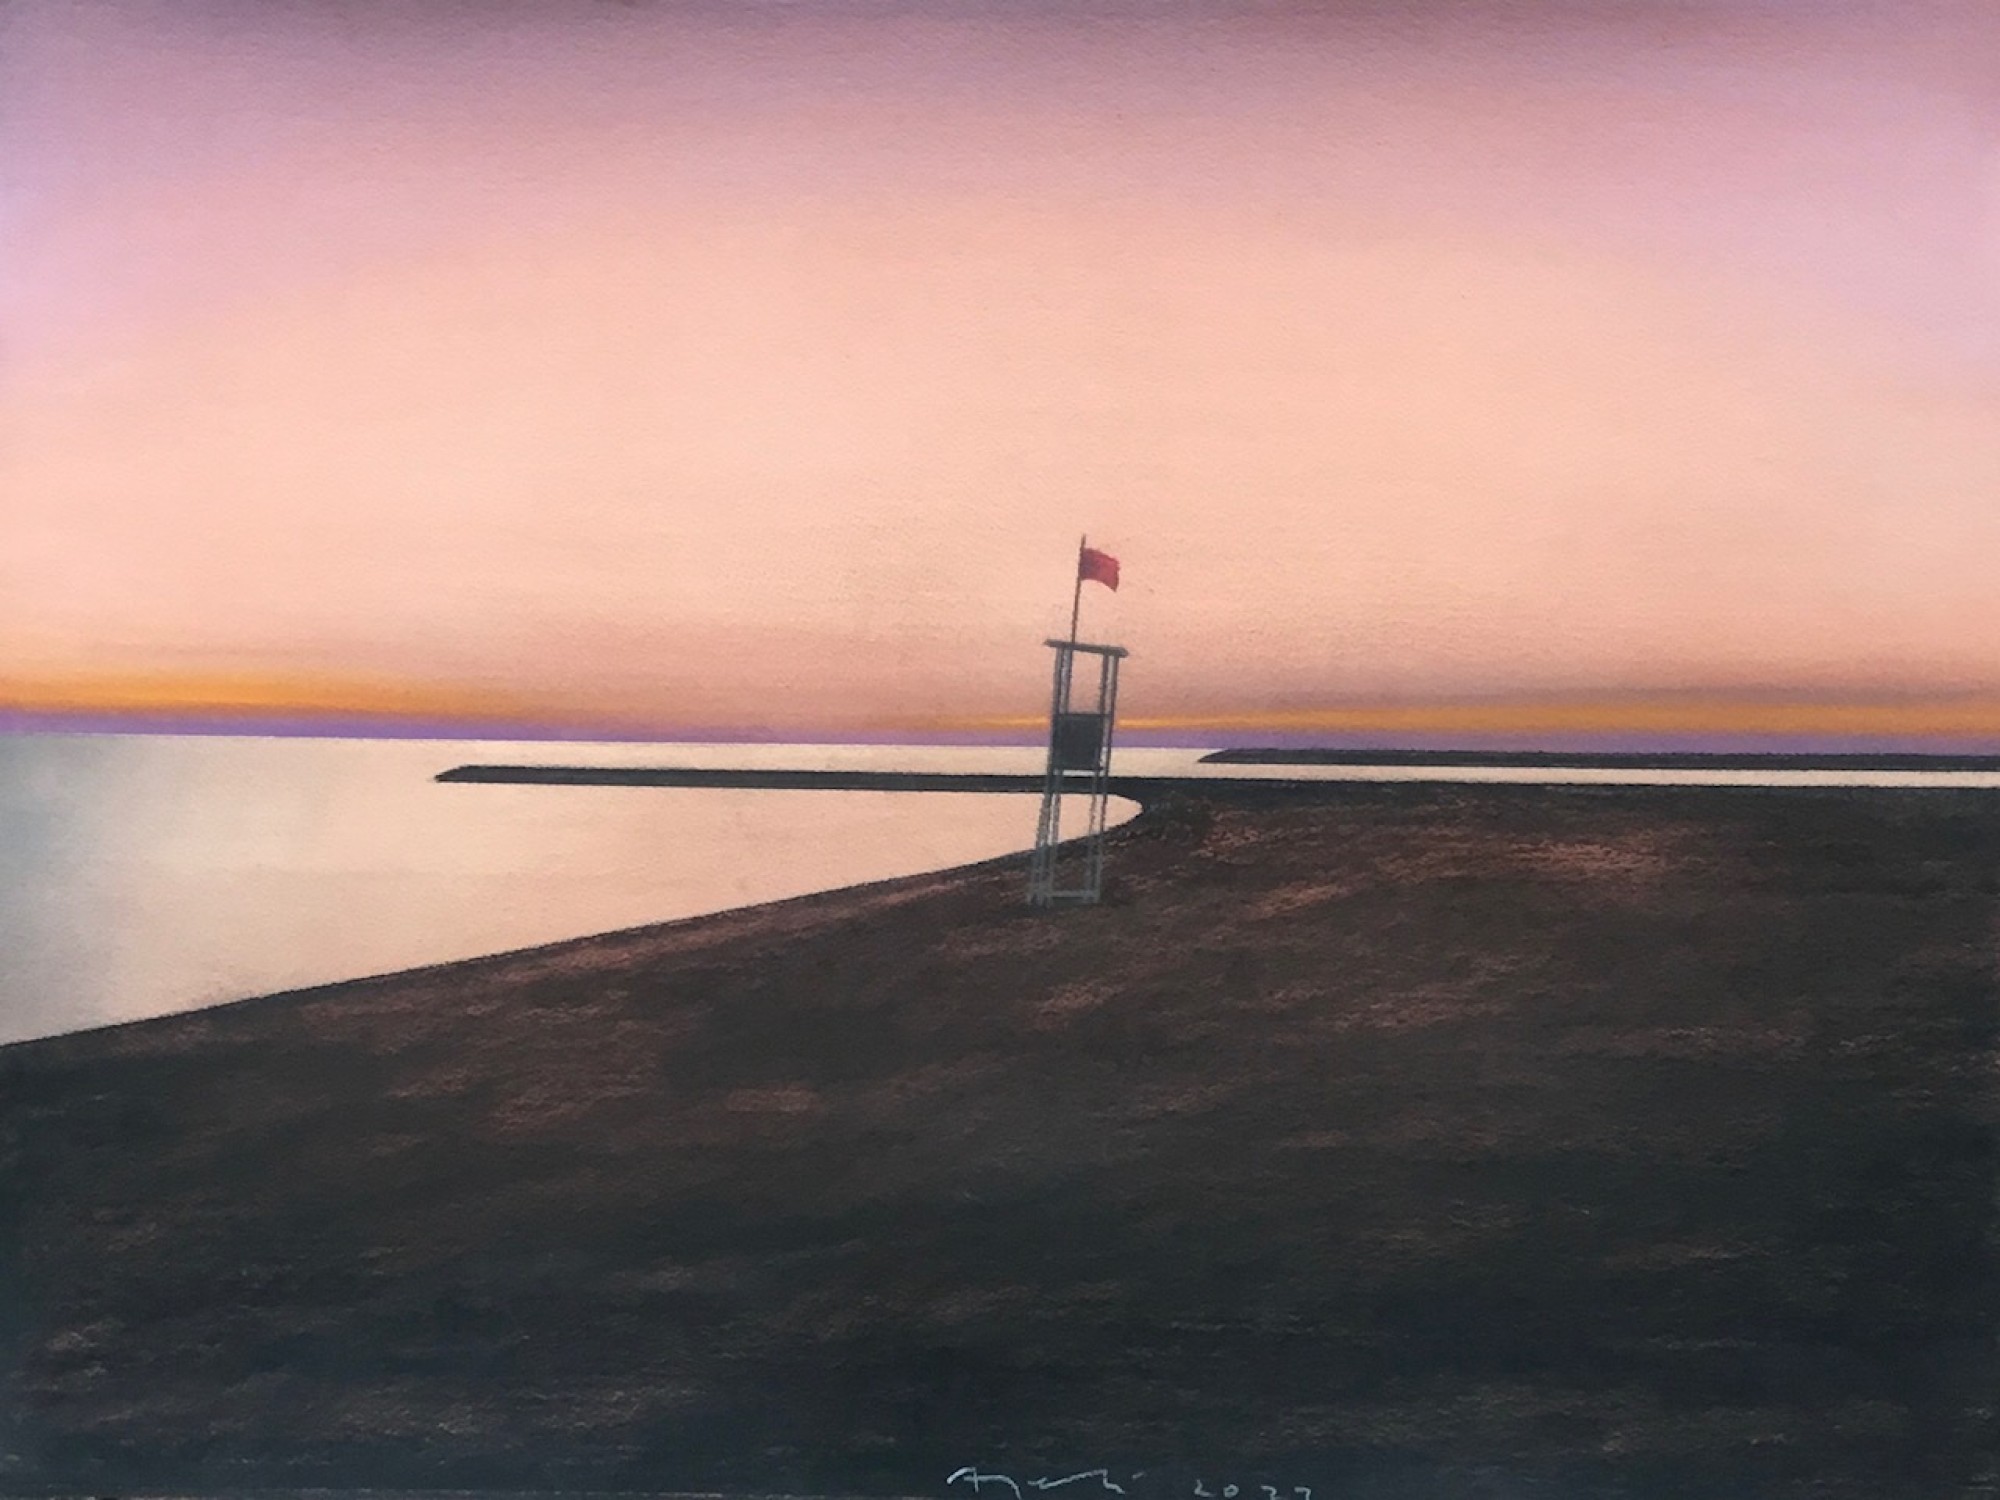 Pastell Gemälde, das einen Rettungsschwimmer-Turm im Sonnenuntergang auf einem
                                          verlassenen Strand zeigt.